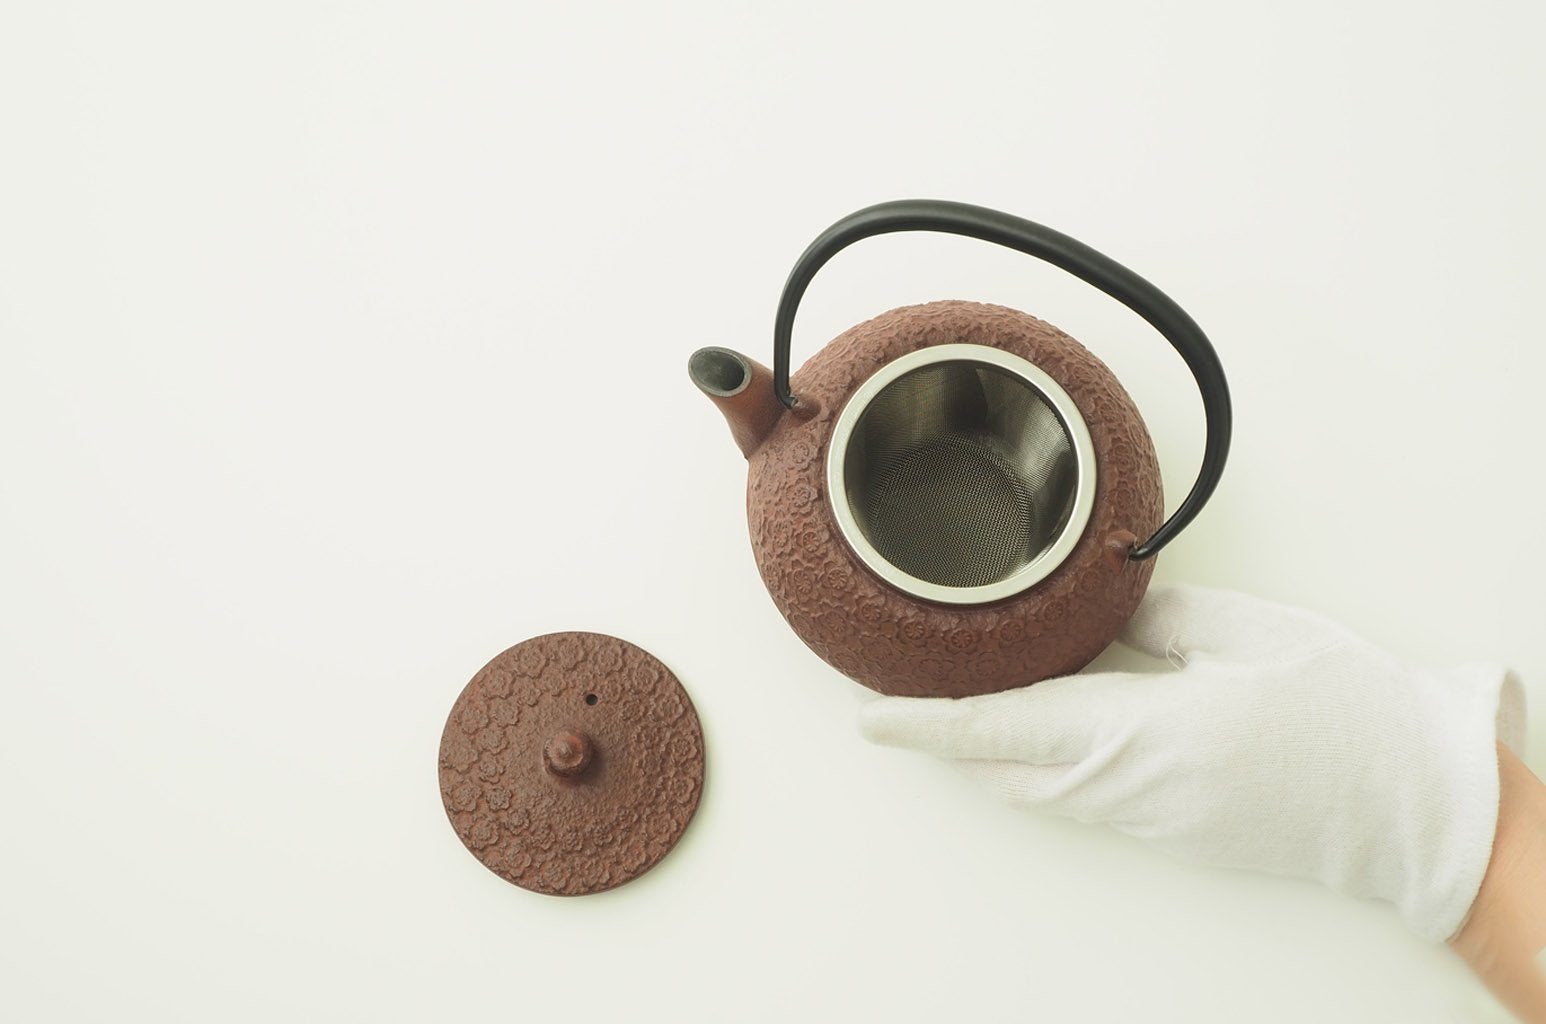 Nambu Ironware Teapot "Sakura 0.35L"